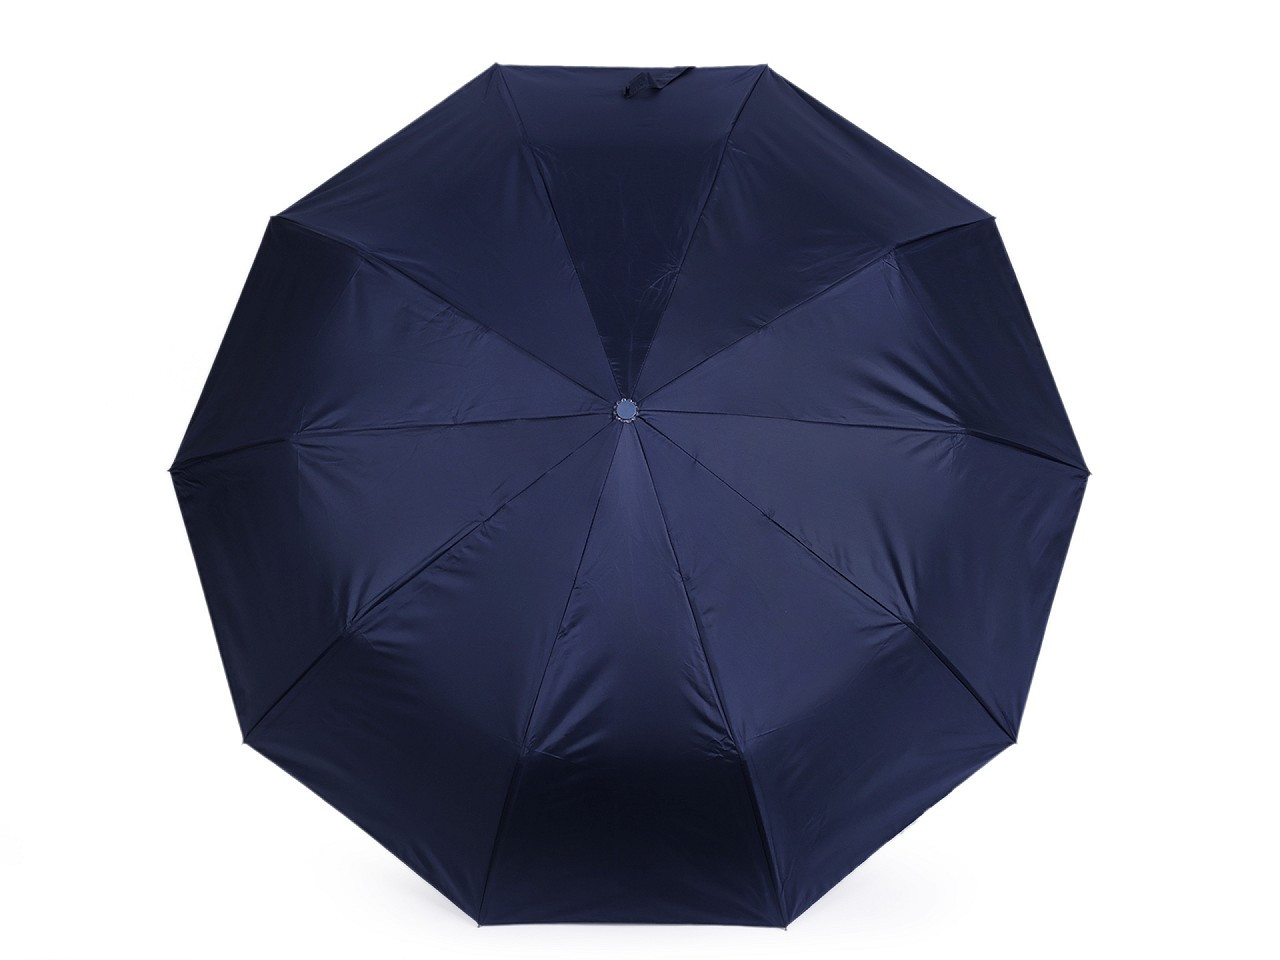 Skládací deštník s led světlem v rukojeti, barva 5 modrá tmavá